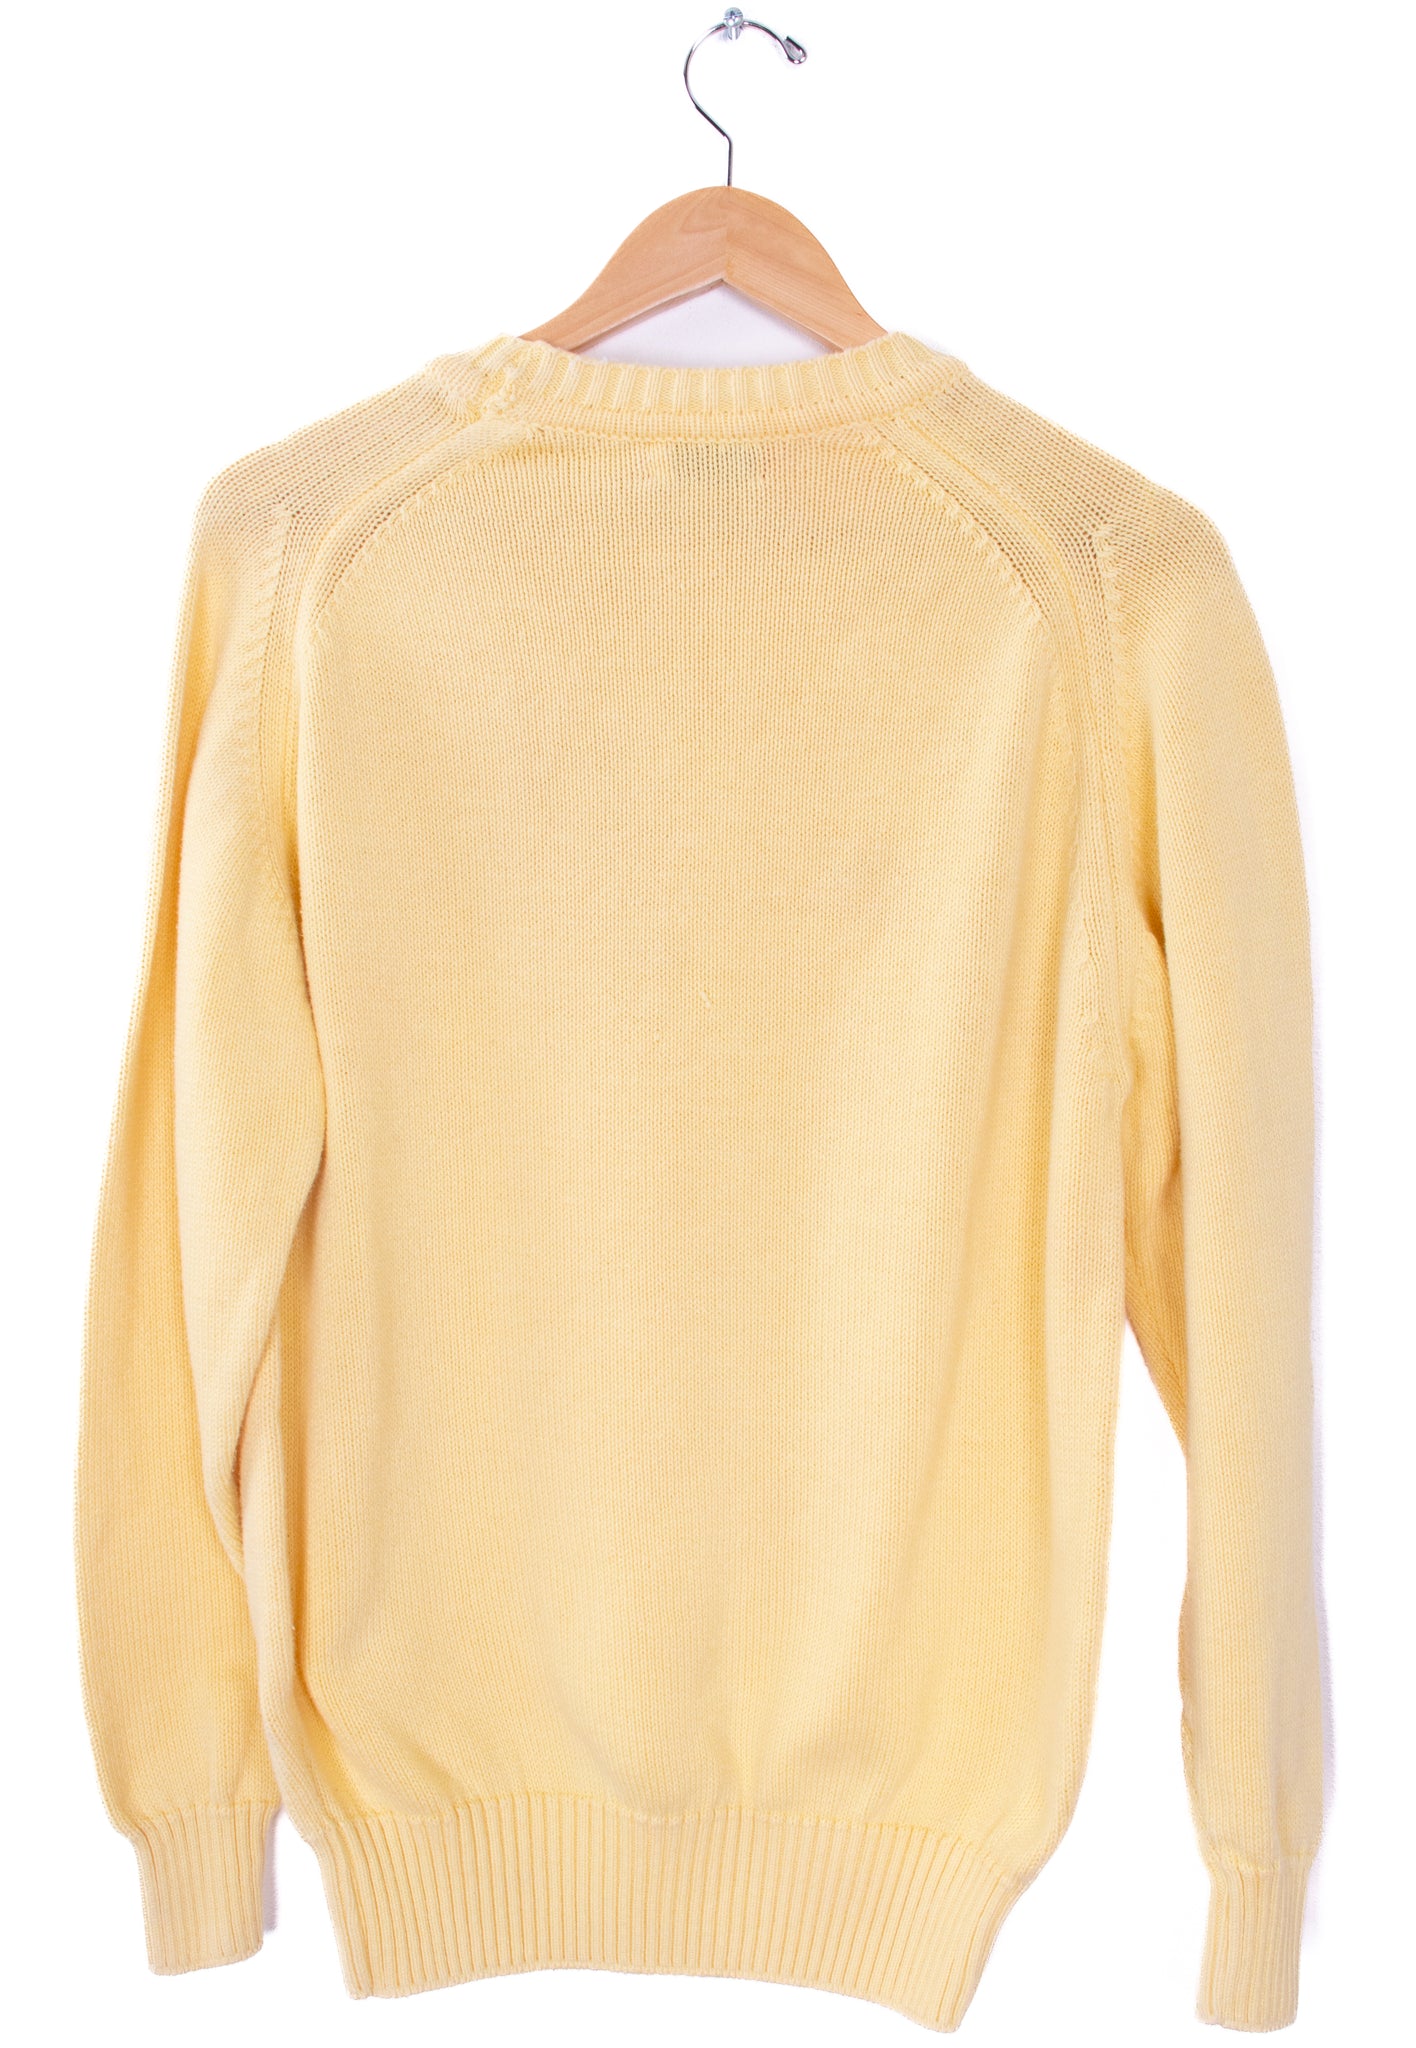 80s-90s Bass Yellow Sweater